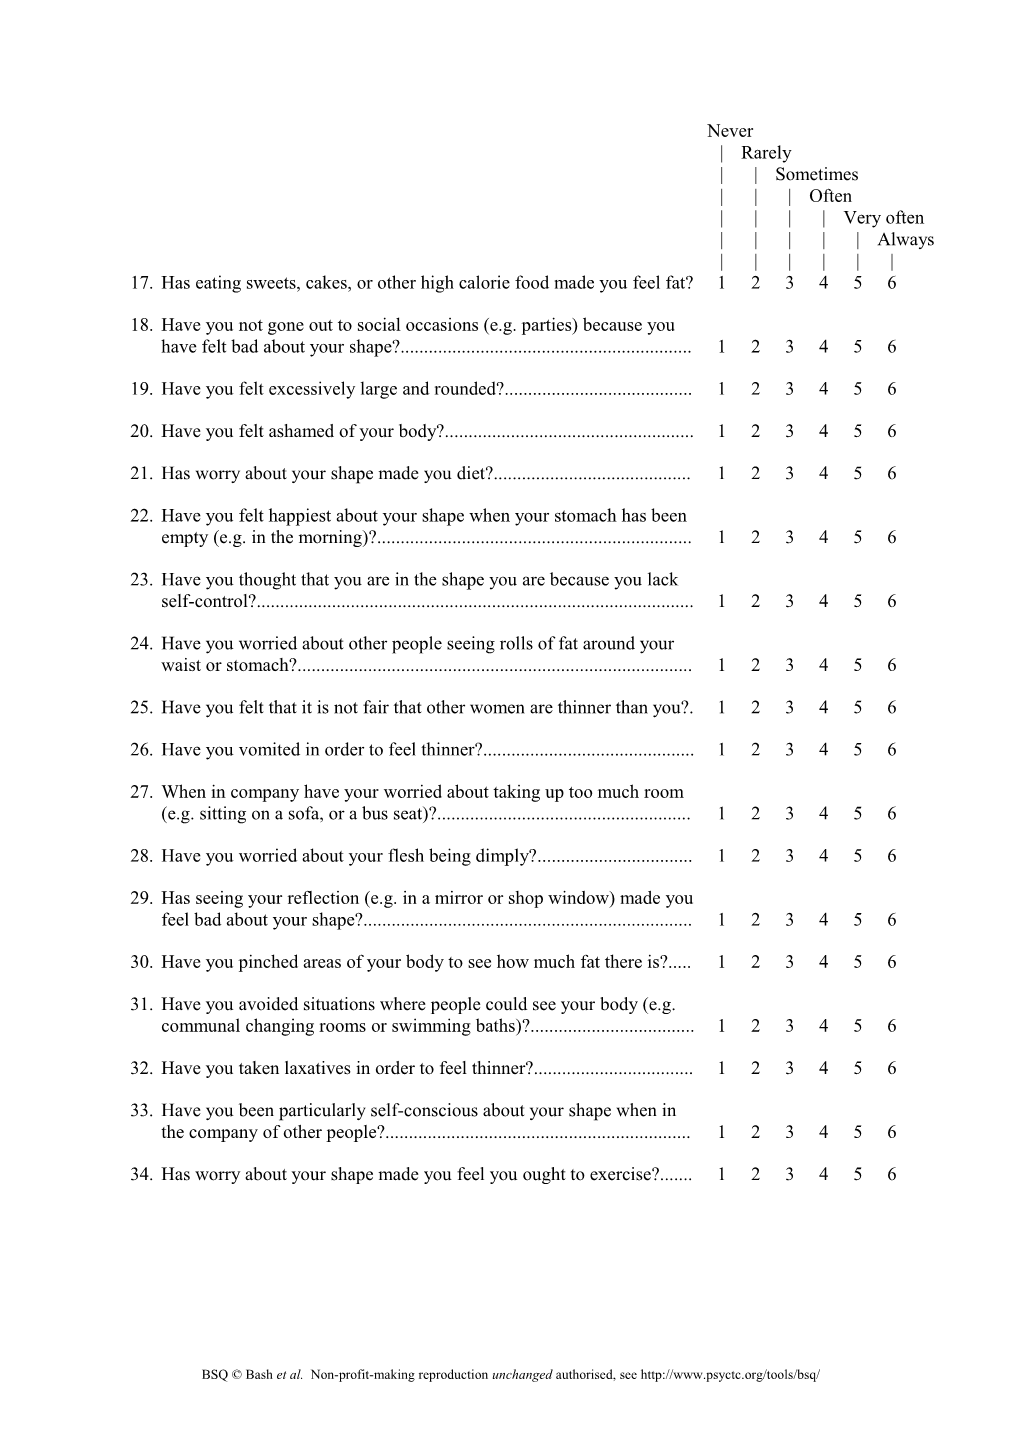 Body Shape Questionnaire (BSQ) Original 34 Item Version